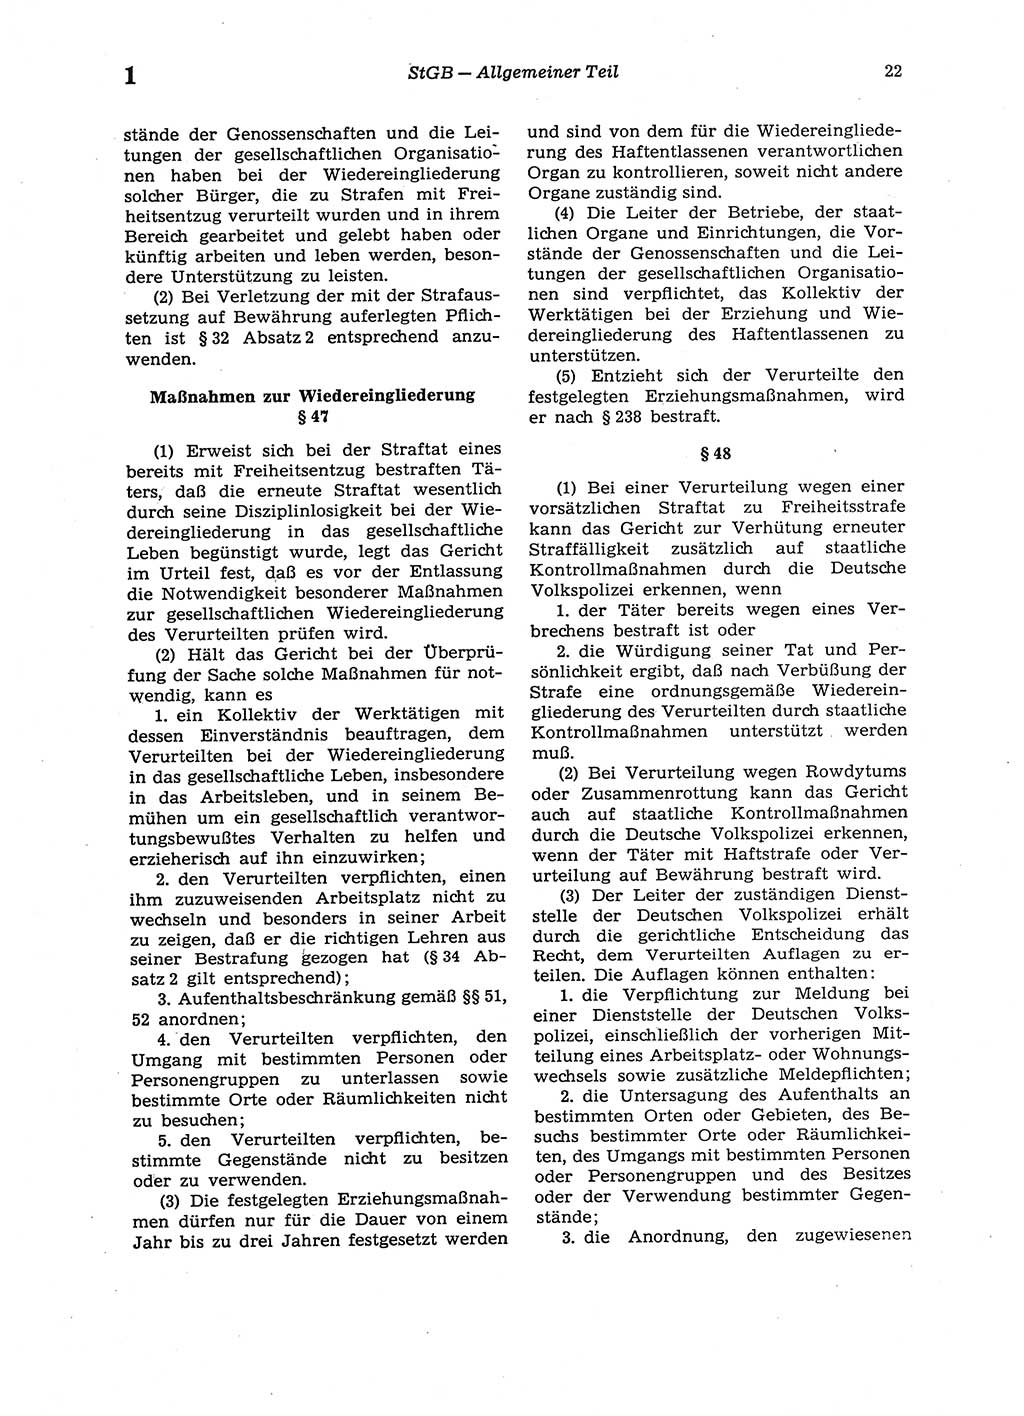 Strafgesetzbuch (StGB) der Deutschen Demokratischen Republik (DDR) 1987, Seite 22 (StGB DDR 1987, S. 22)